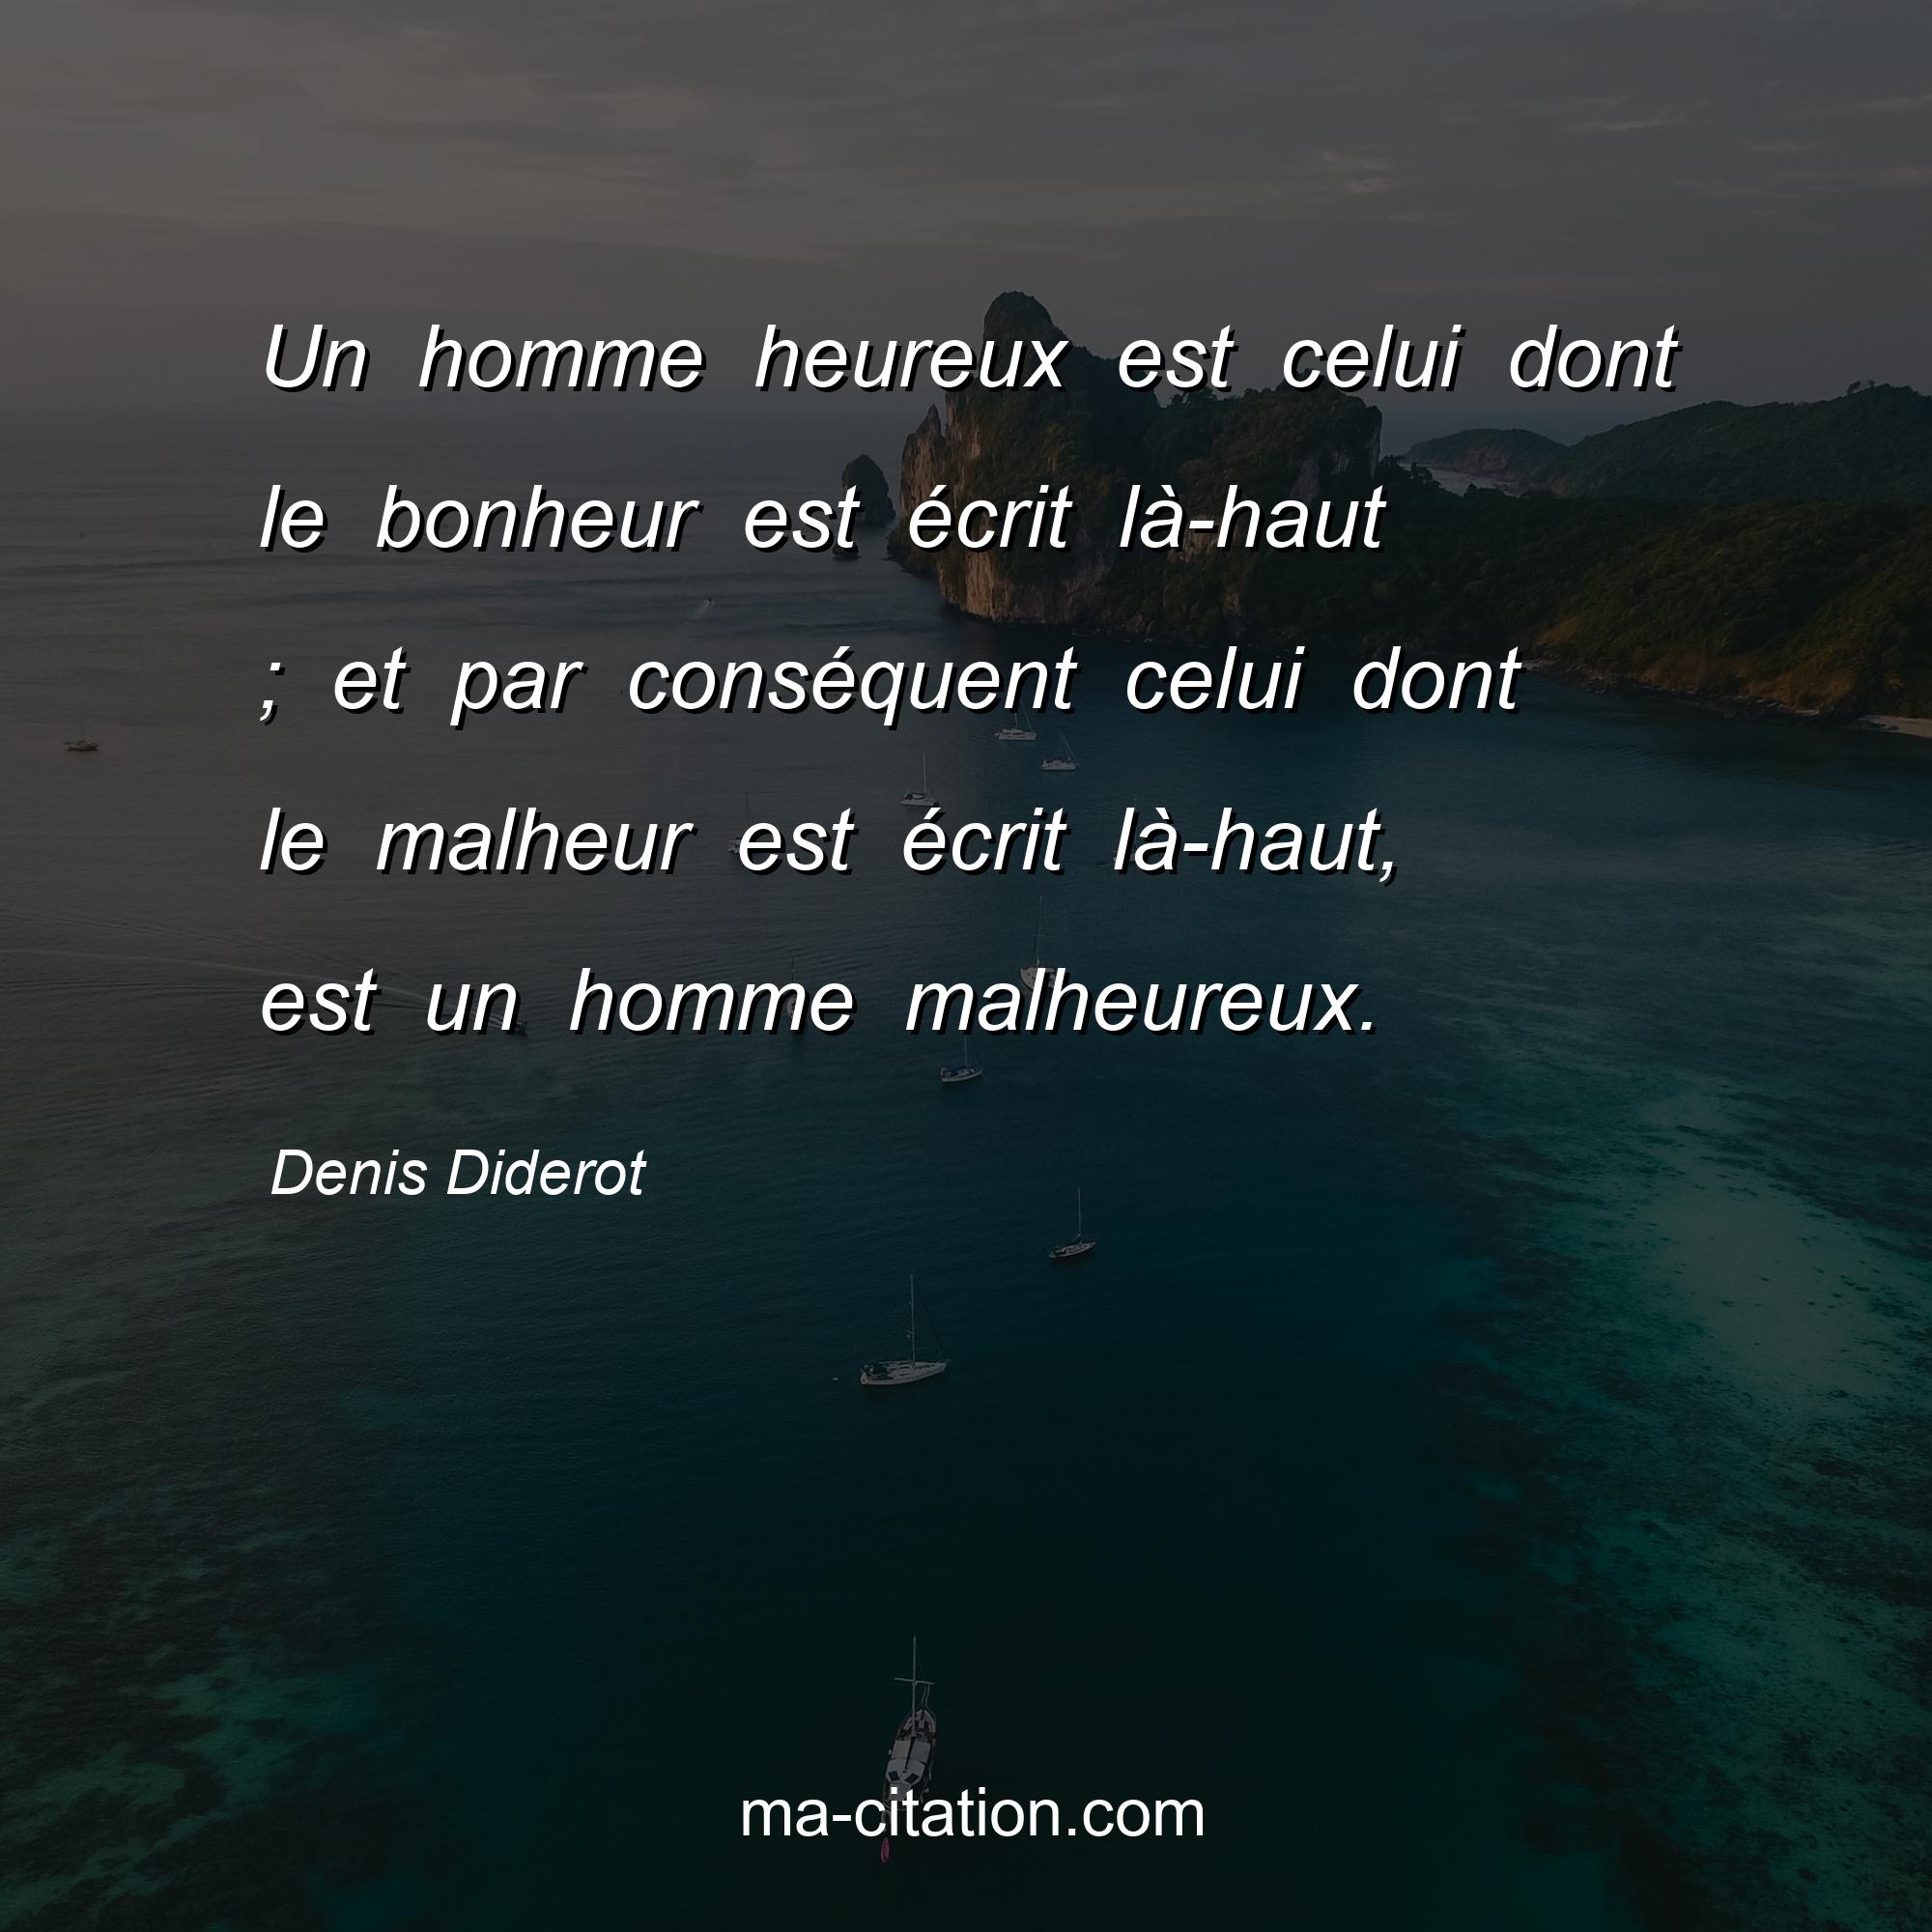 Denis Diderot : Un homme heureux est celui dont le bonheur est écrit là-haut ; et par conséquent celui dont le malheur est écrit là-haut, est un homme malheureux.